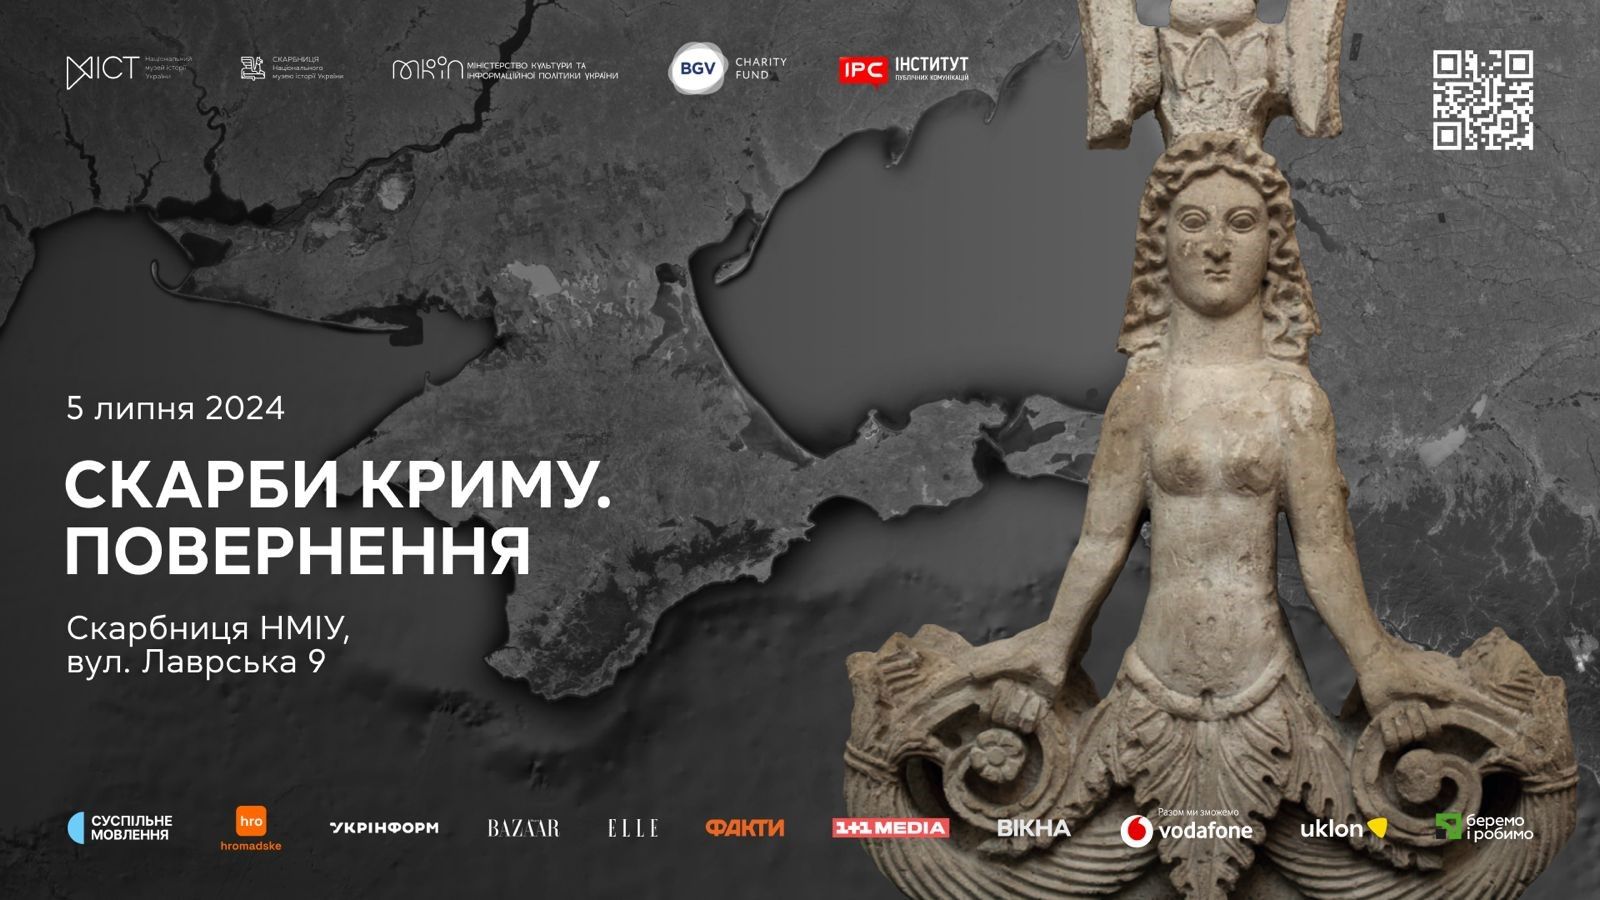 Експозиція фактично стане постійною у стінах Музею та триватиме до остаточної деокупації Криму,